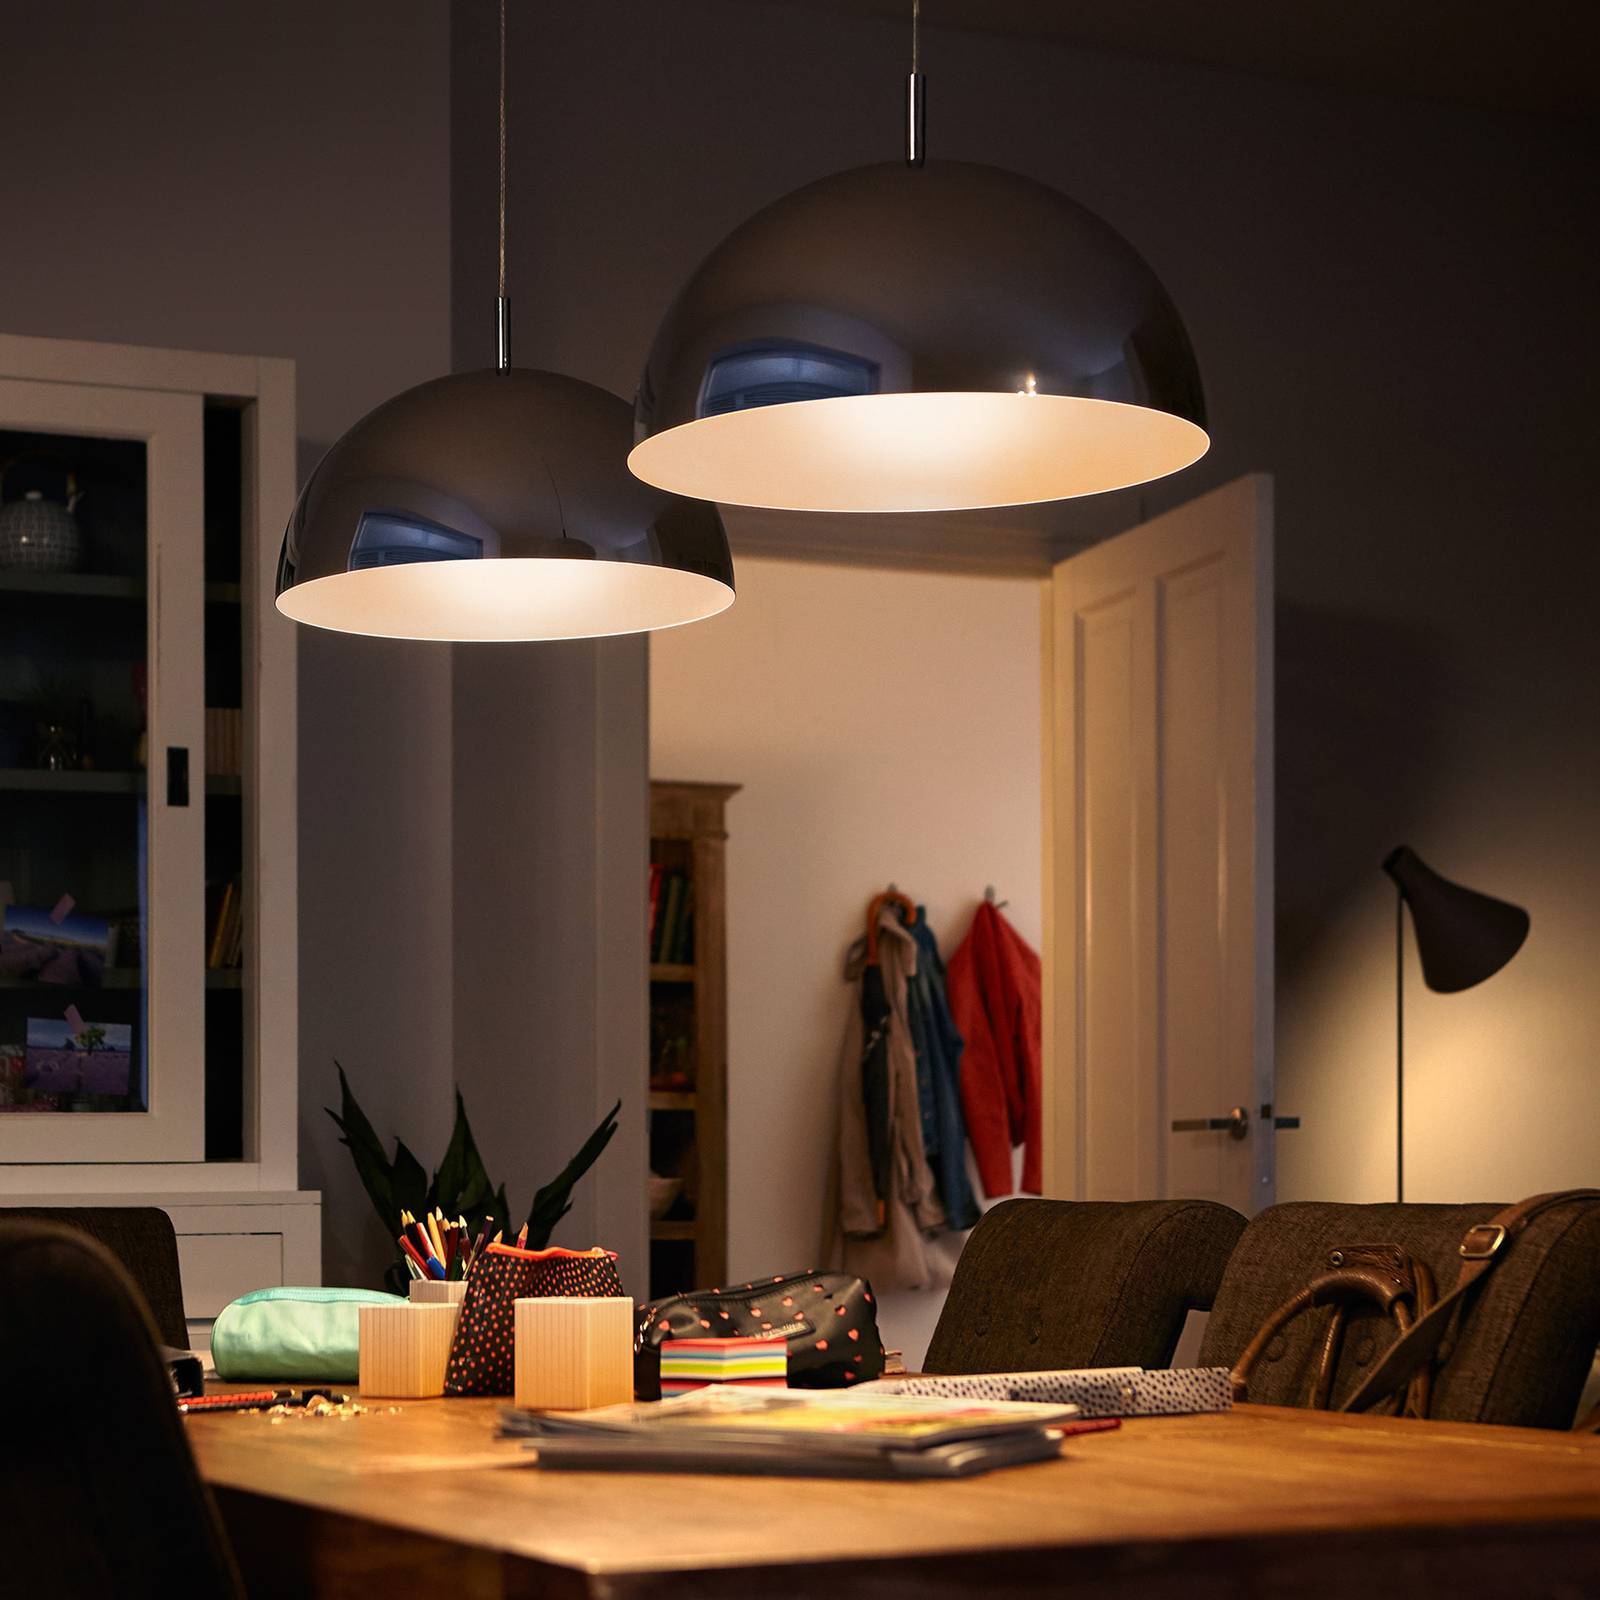 Philips LED reflektor PAR30S E27 9,5 W teplá bílá stmív.